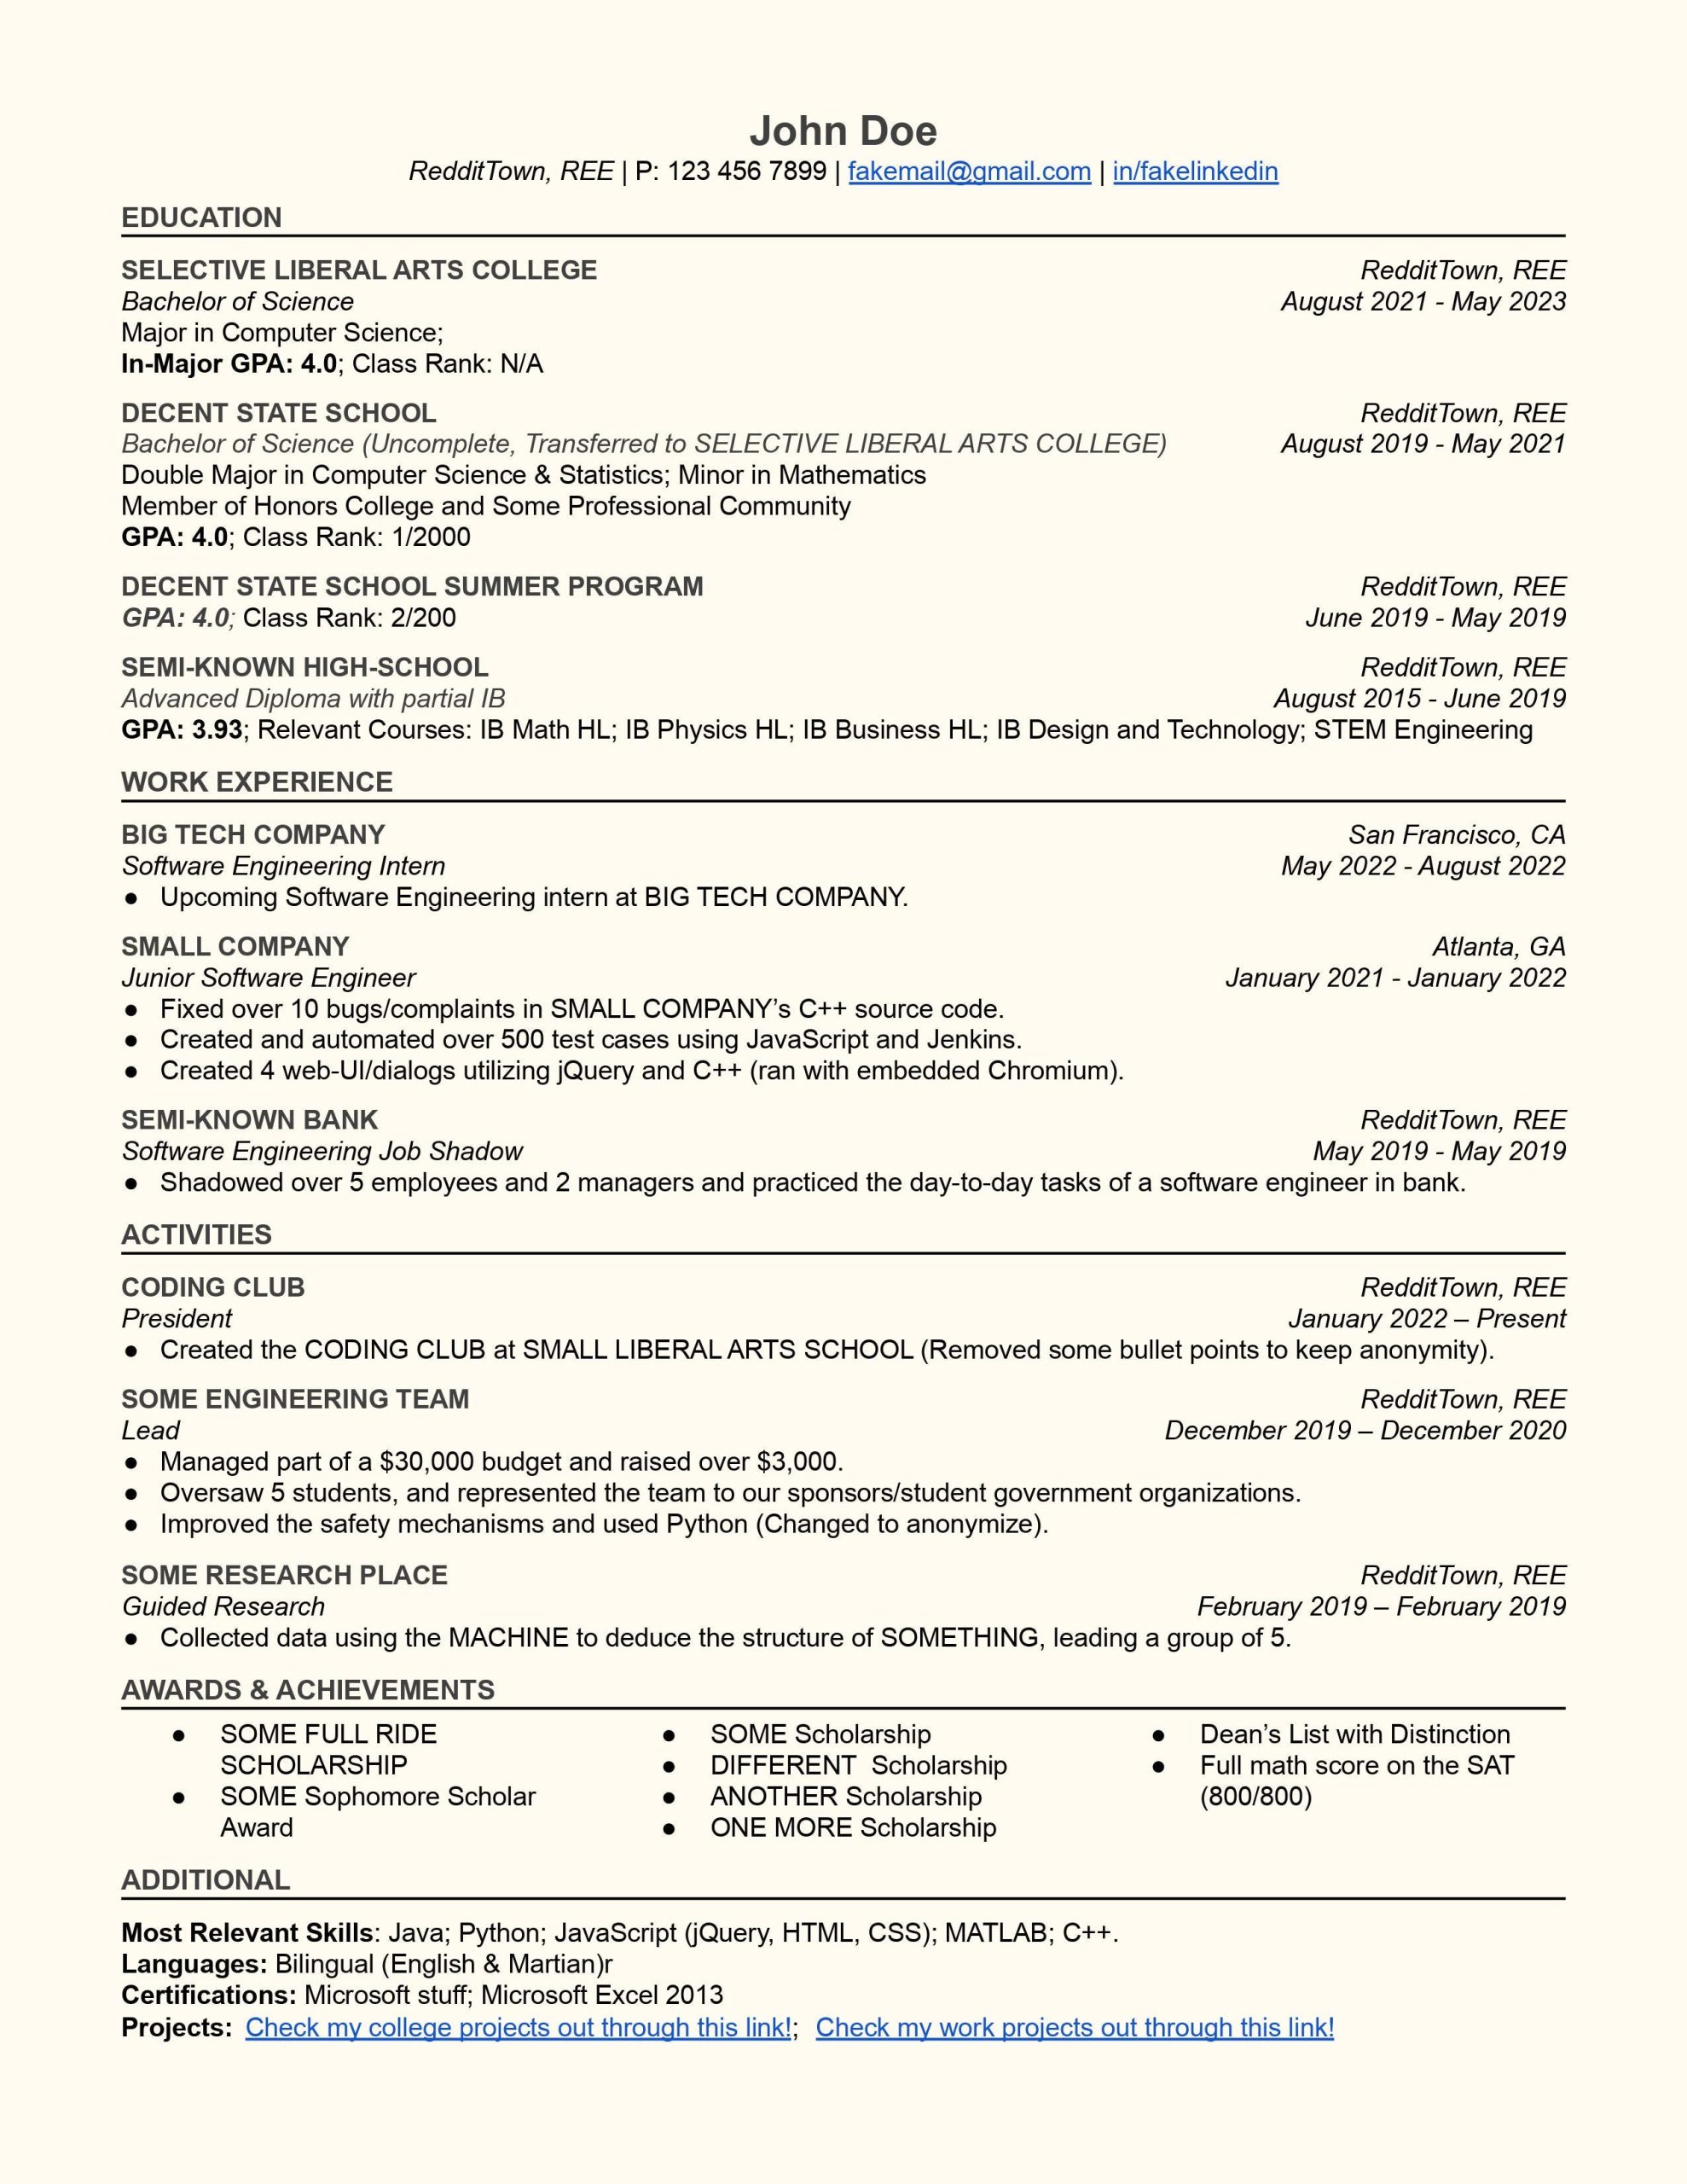 Sample Resume for Net Developer Reddit software Engineer Resume Review : R/resumes